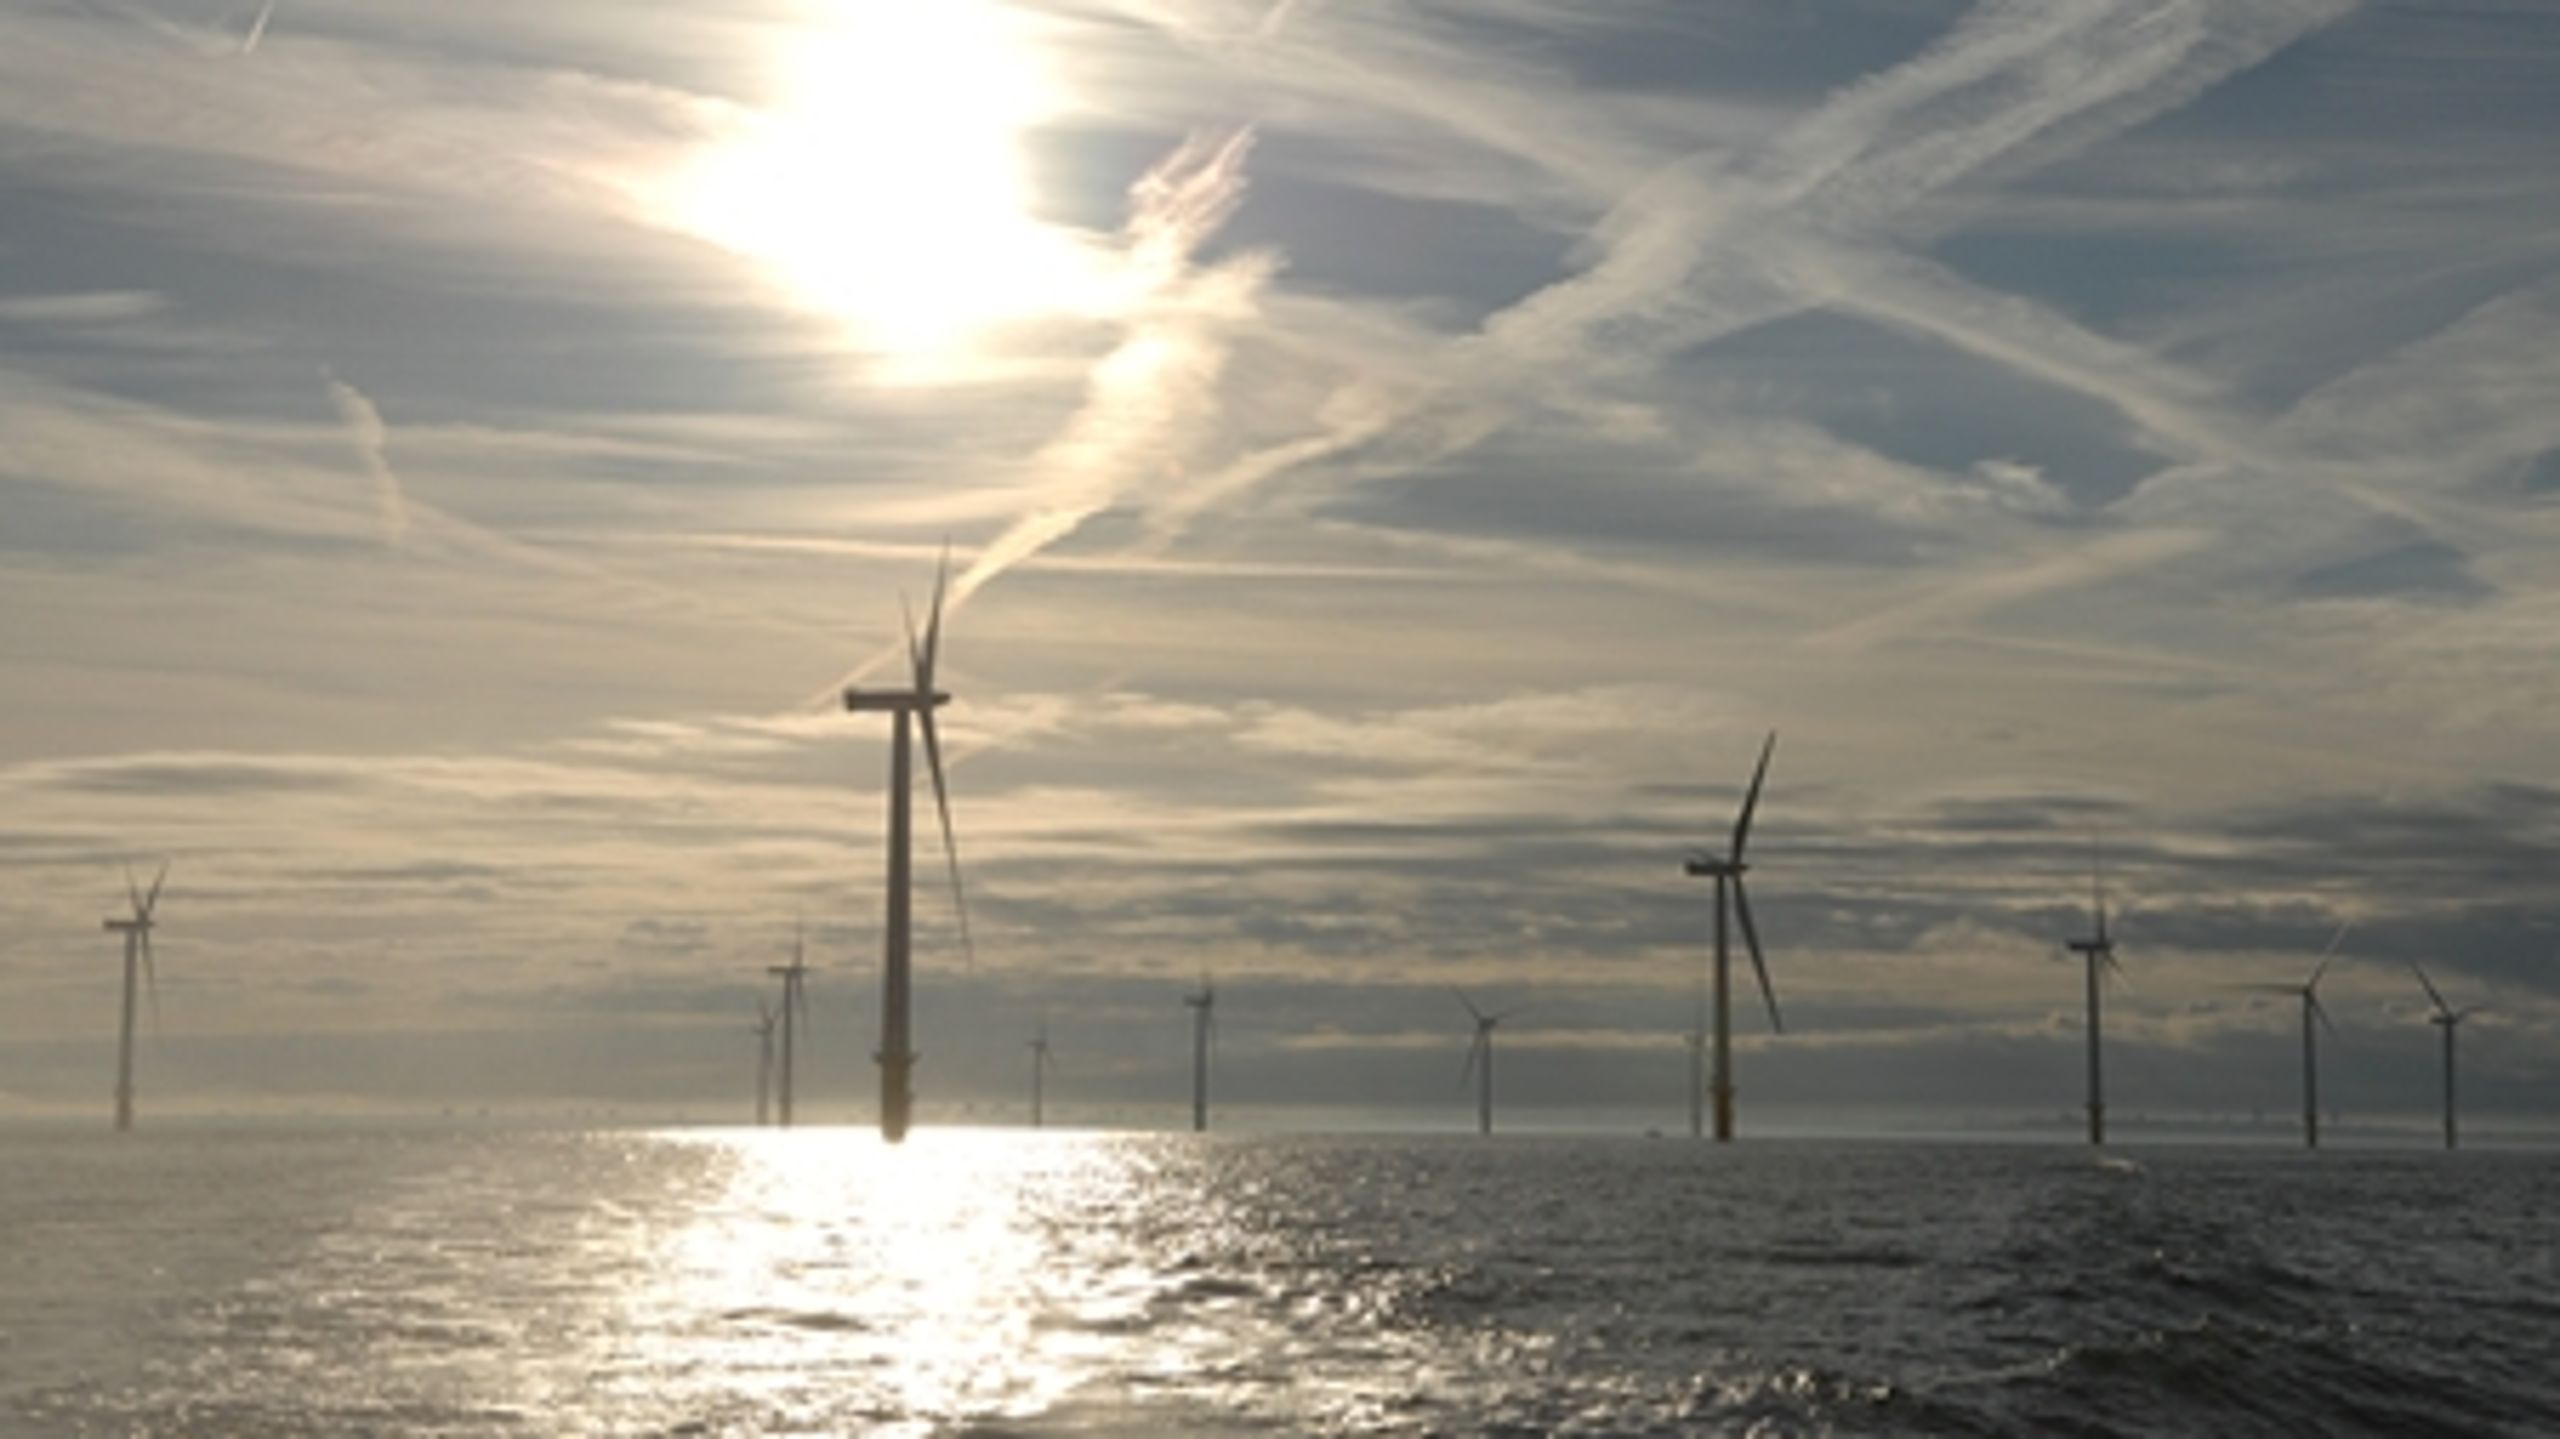 Ny analyse viser, at regeringens udspil til energiforhandlingerne over-opfylder regeringens eget mål for vindkraft.